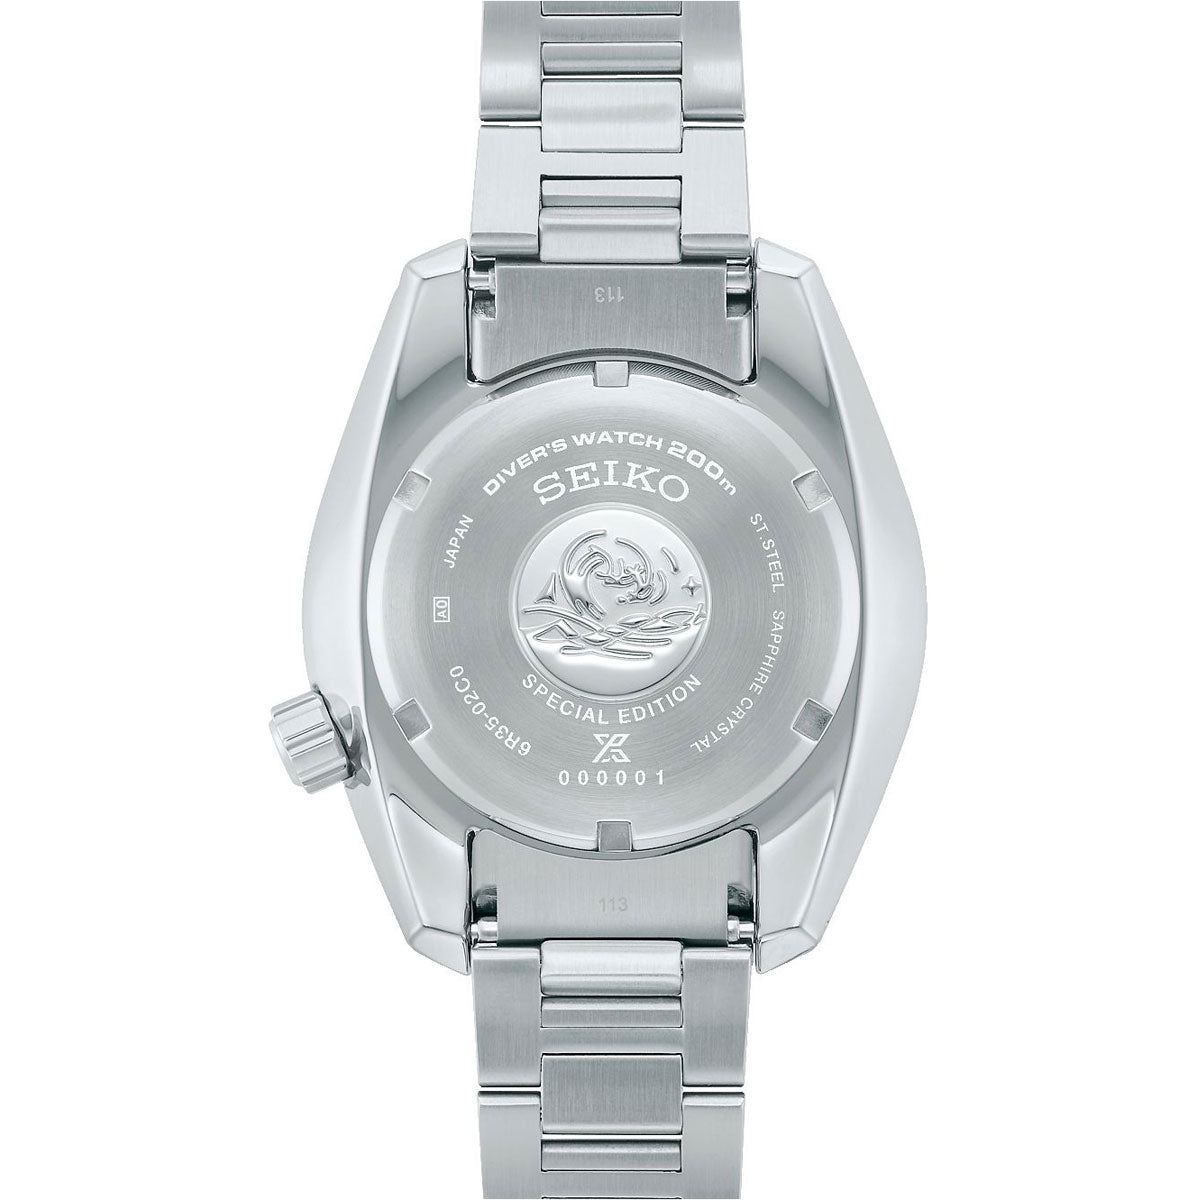 セイコー プロスペックス SEIKO PROSPEX ダイバースキューバ メカニカル 自動巻き PADIスペシャルモデル コアショップ専用 流通限定 腕時計 メンズ SBDC189